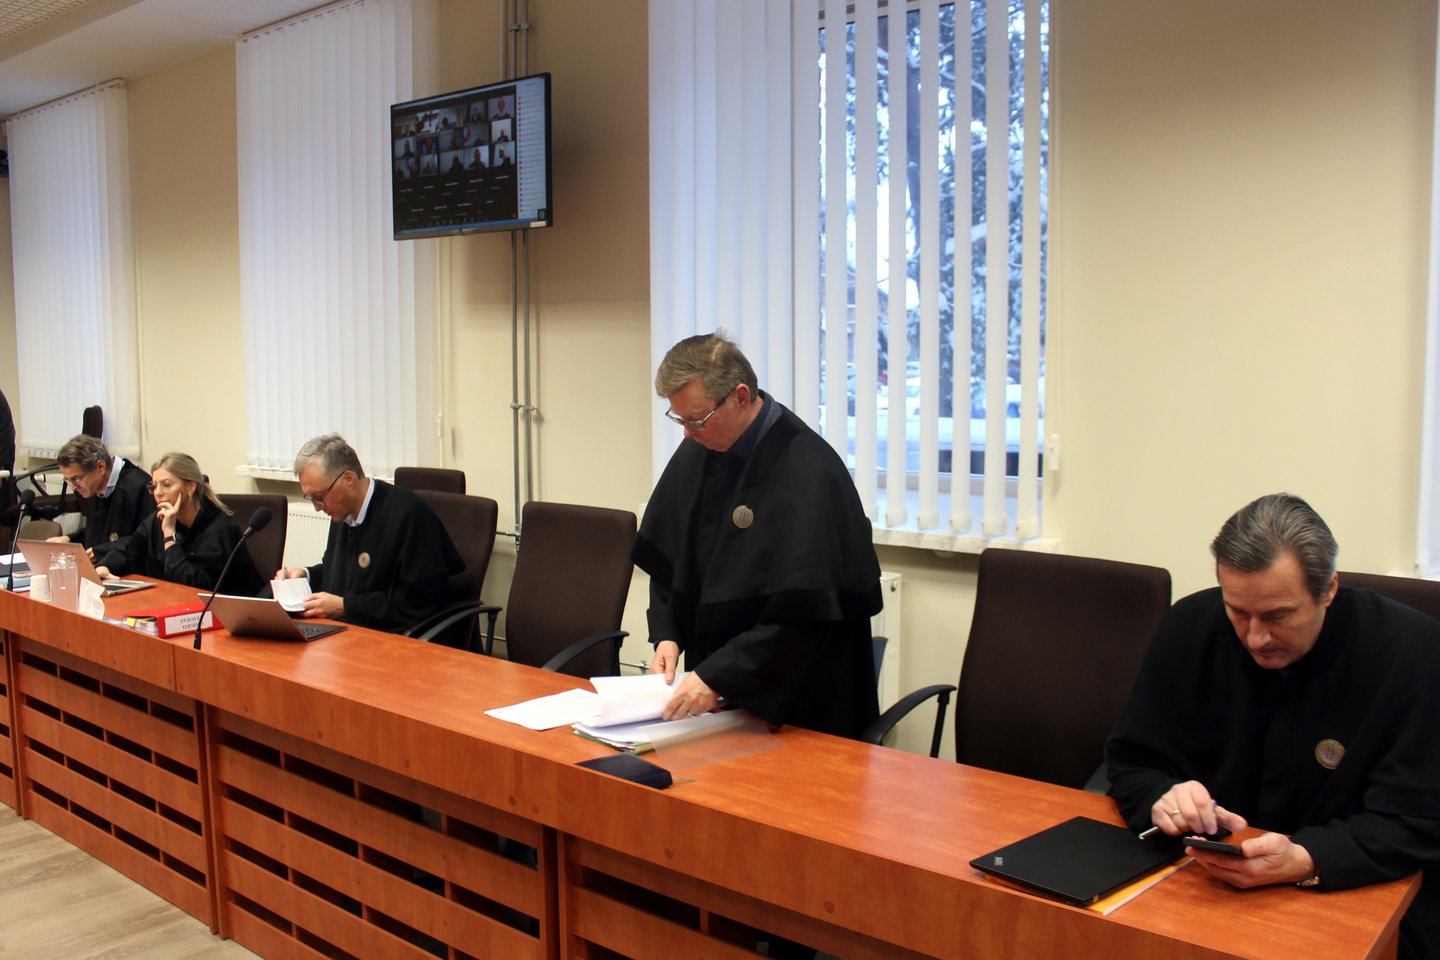  Šiaulių apygardos teismas pagaliau pradėjo nagrinėti Kuršių marių taršos bylą.<br> R.Vitkaus nuotr. 